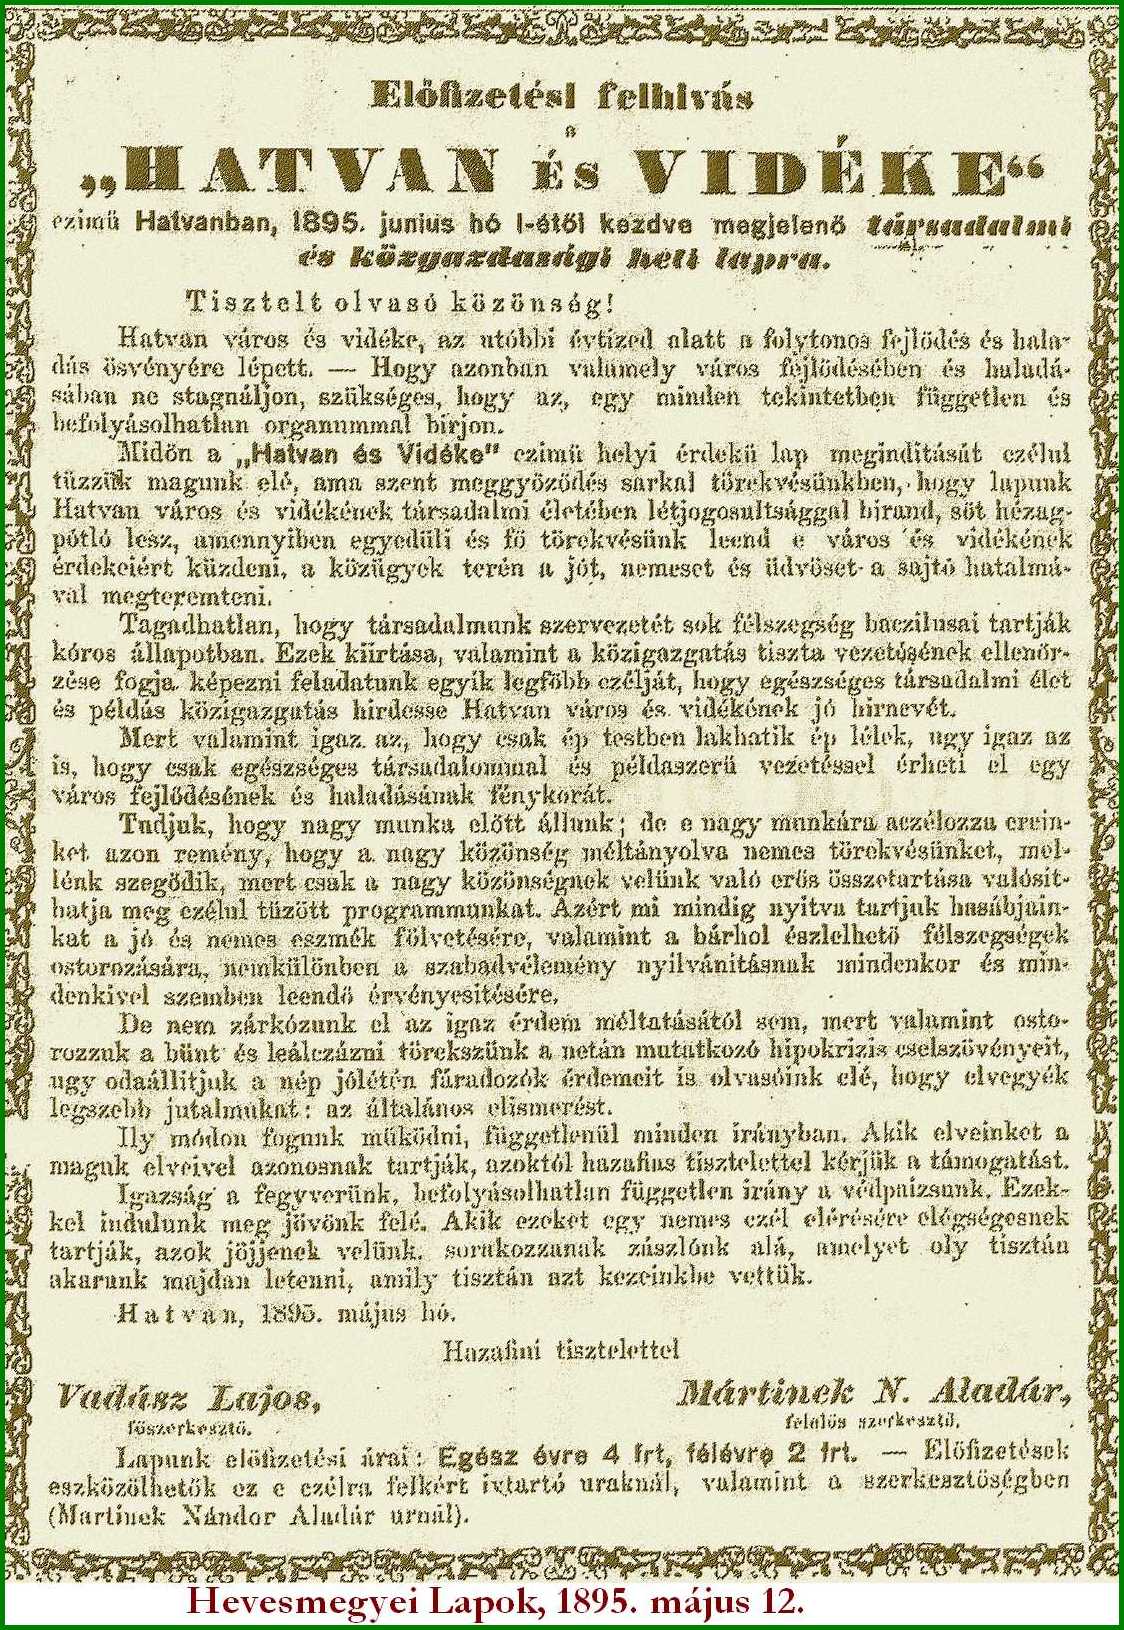 Hatvan és Vidéke hirdetés 1895 v2.jpg